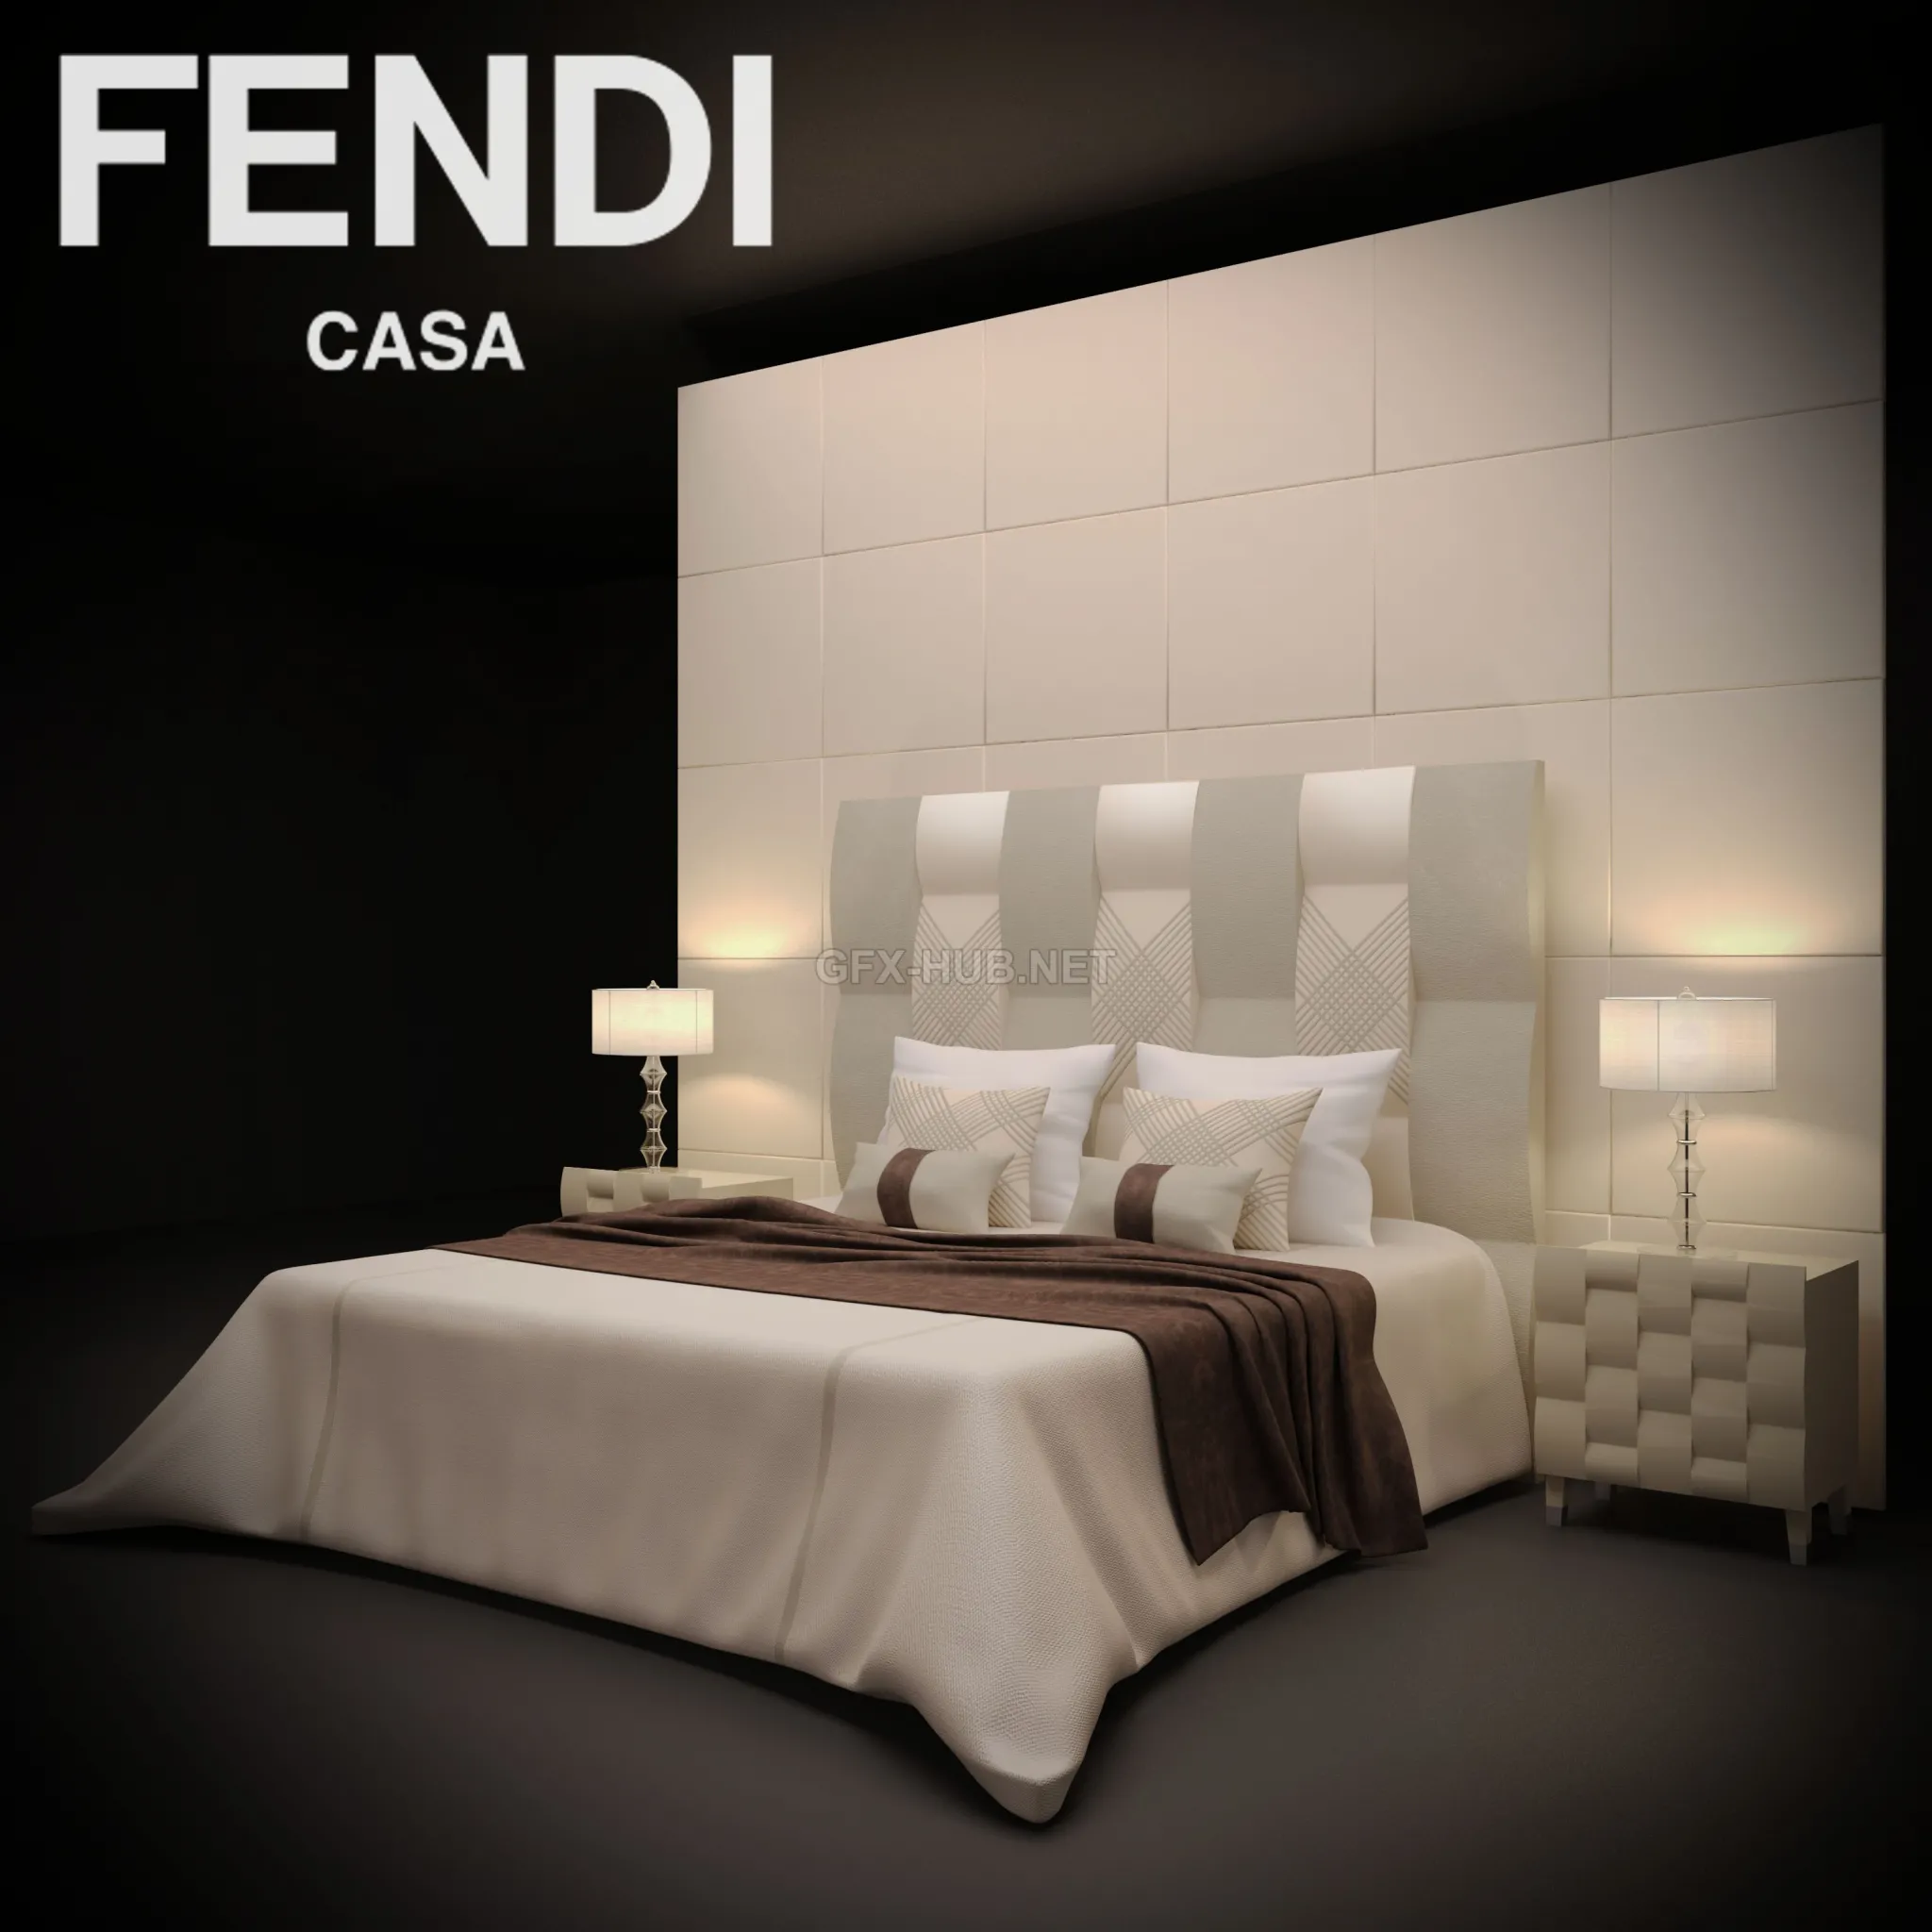 FURNITURE 3D MODELS – FENDI casa bed